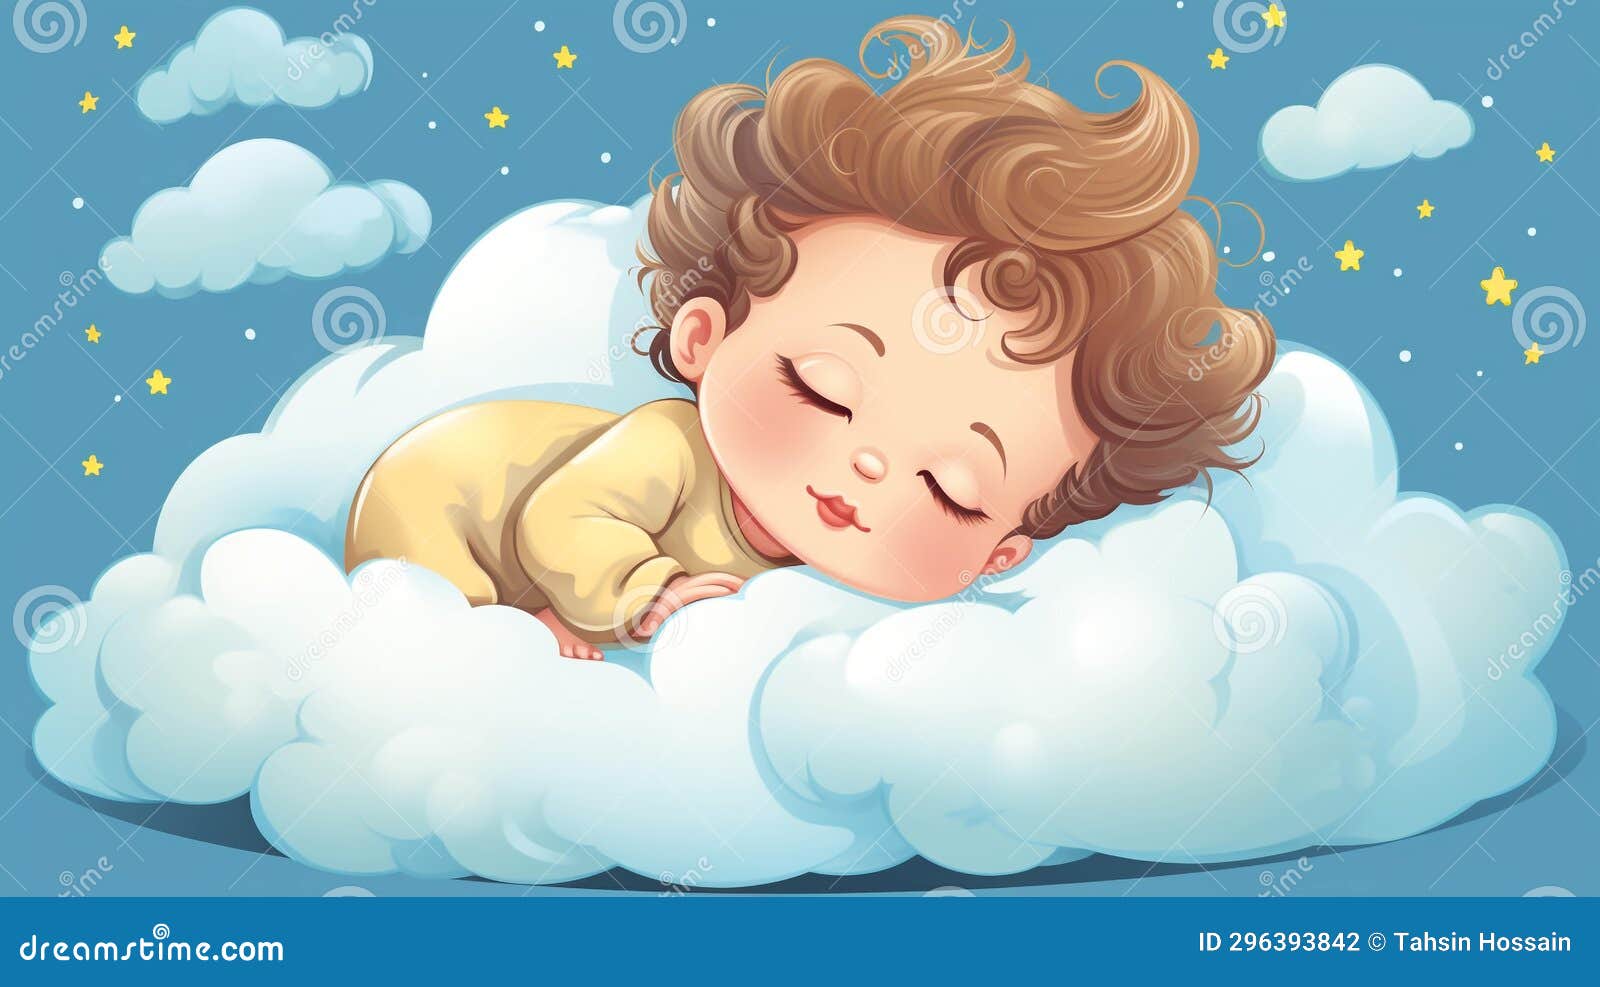 Cartoon Swan Comfort Cushion Baby Sleep Pillow - China Sleep